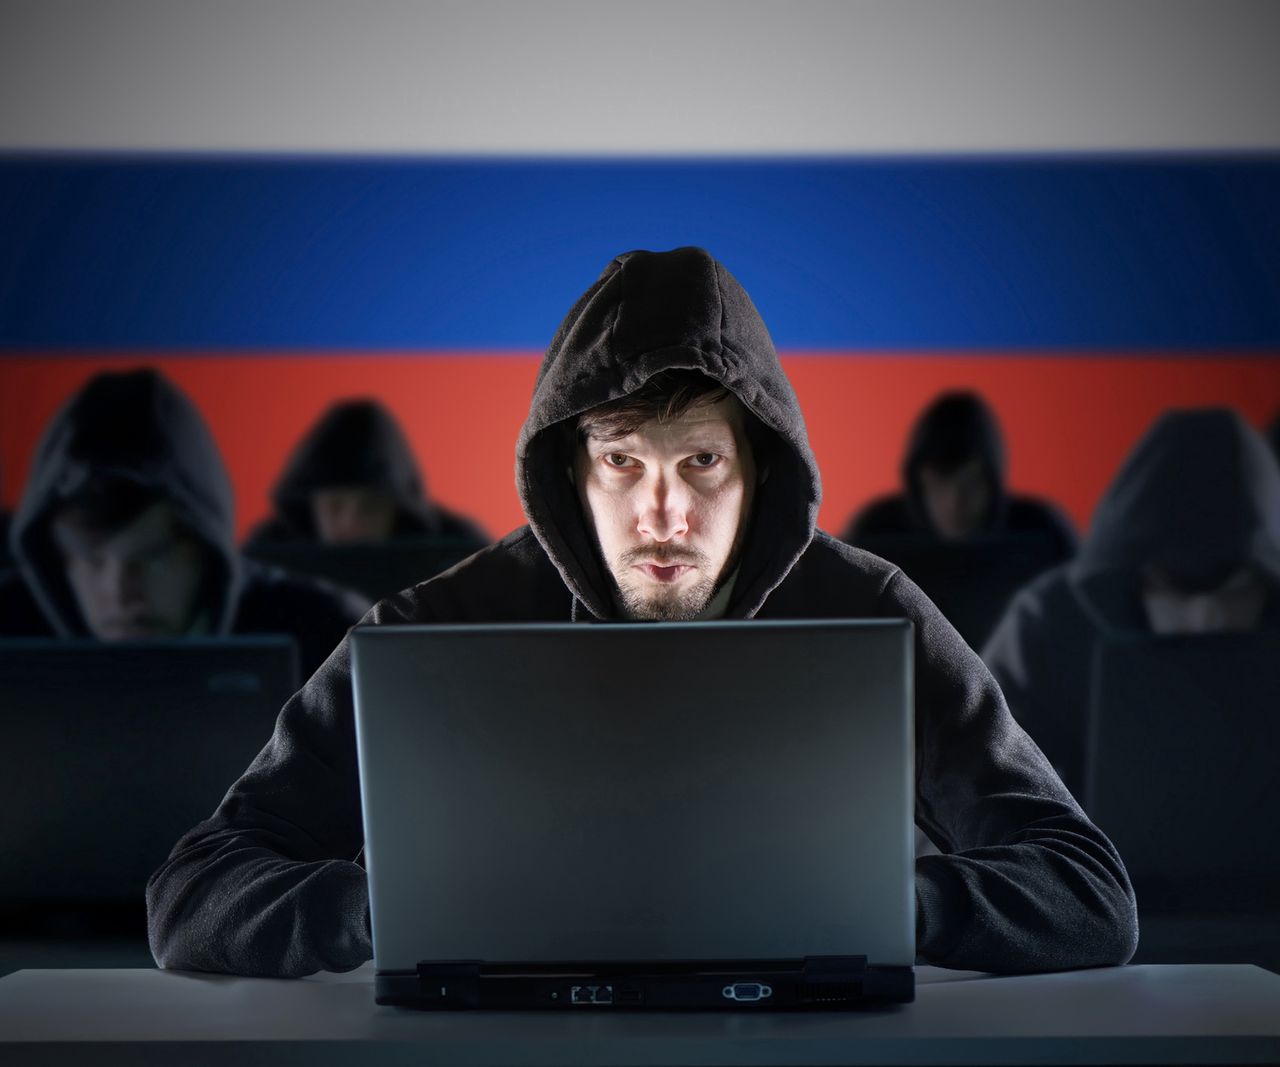 Rosja mówi o legalizacji hakowania. Celem ataków może być Polska